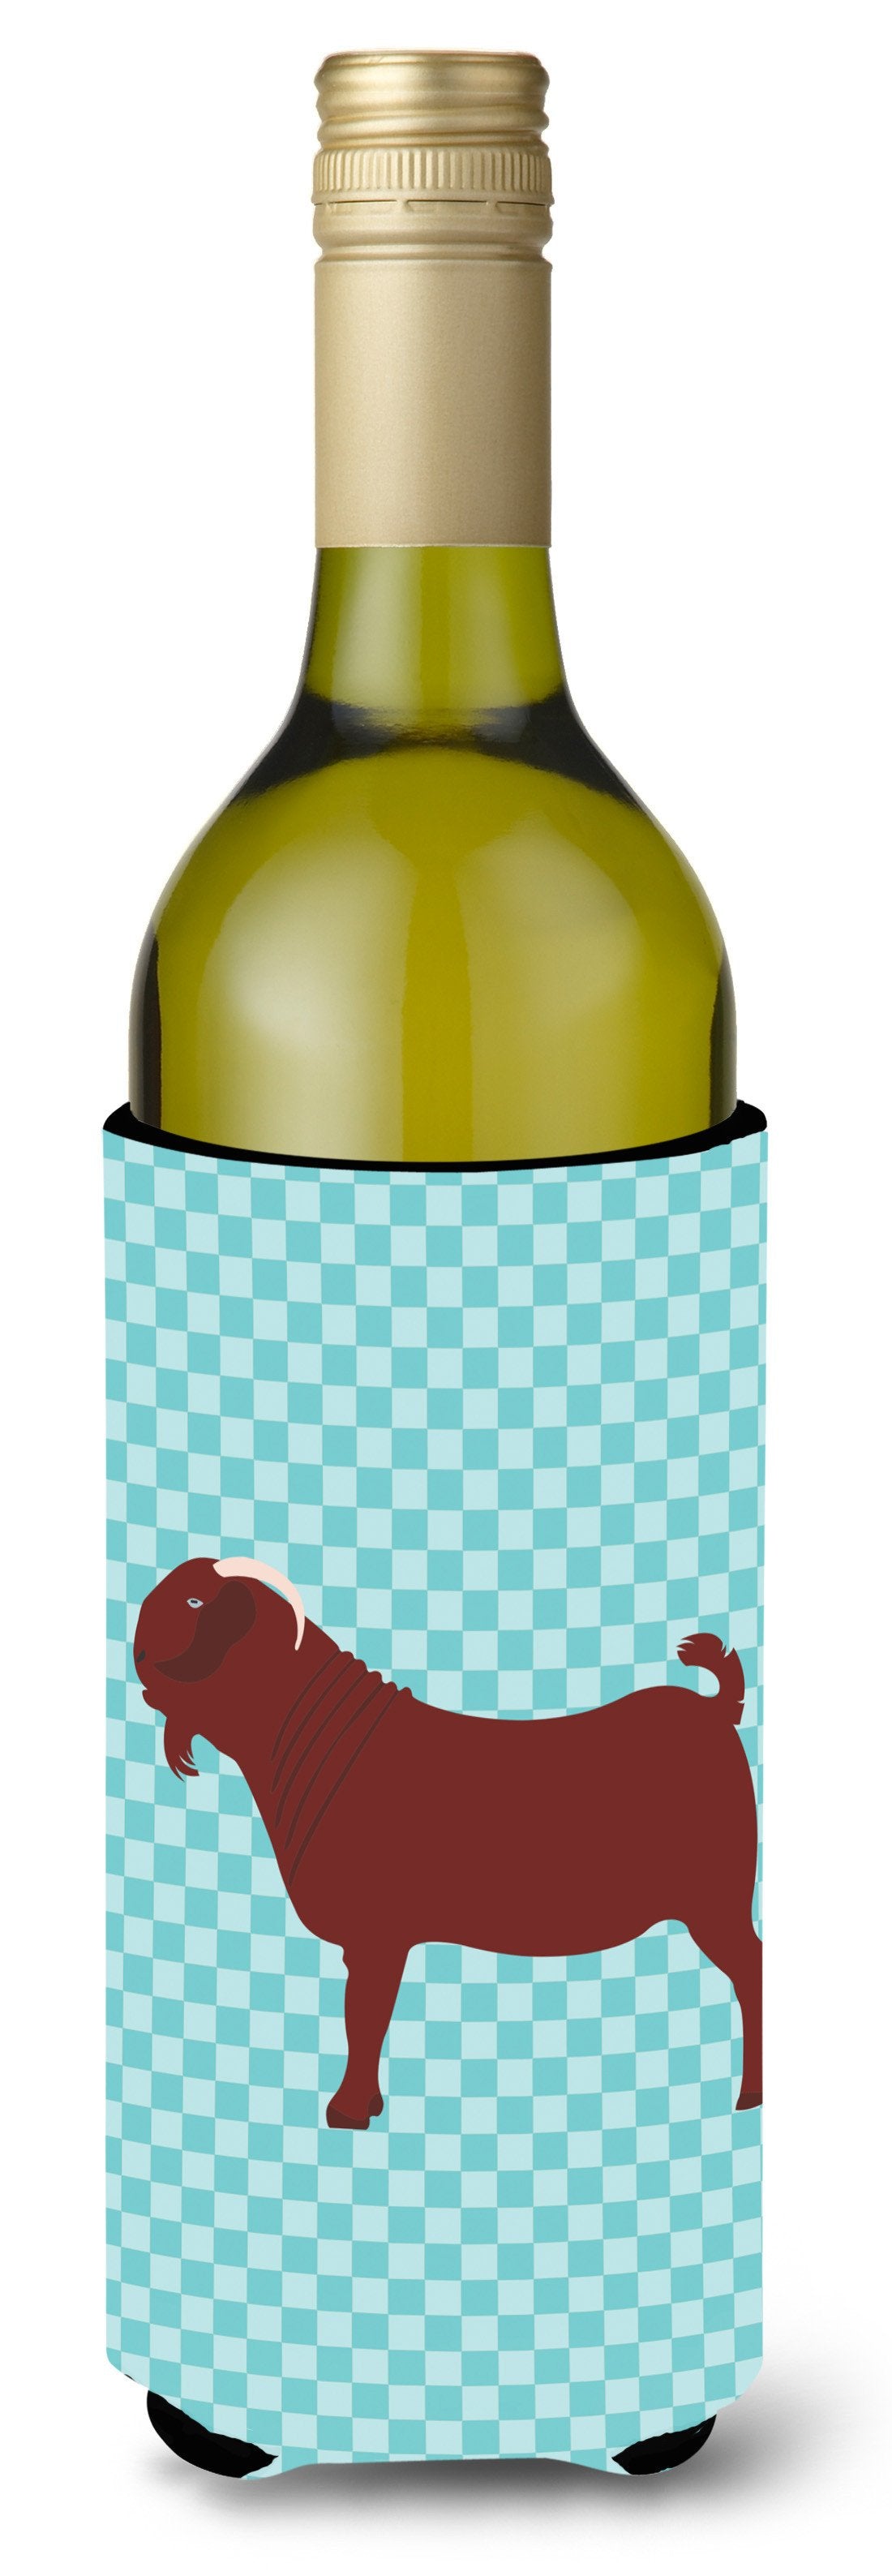 Kalahari Red Goat Blue Check Wine Bottle Beverge Insulator Hugger BB8065LITERK by Caroline's Treasures